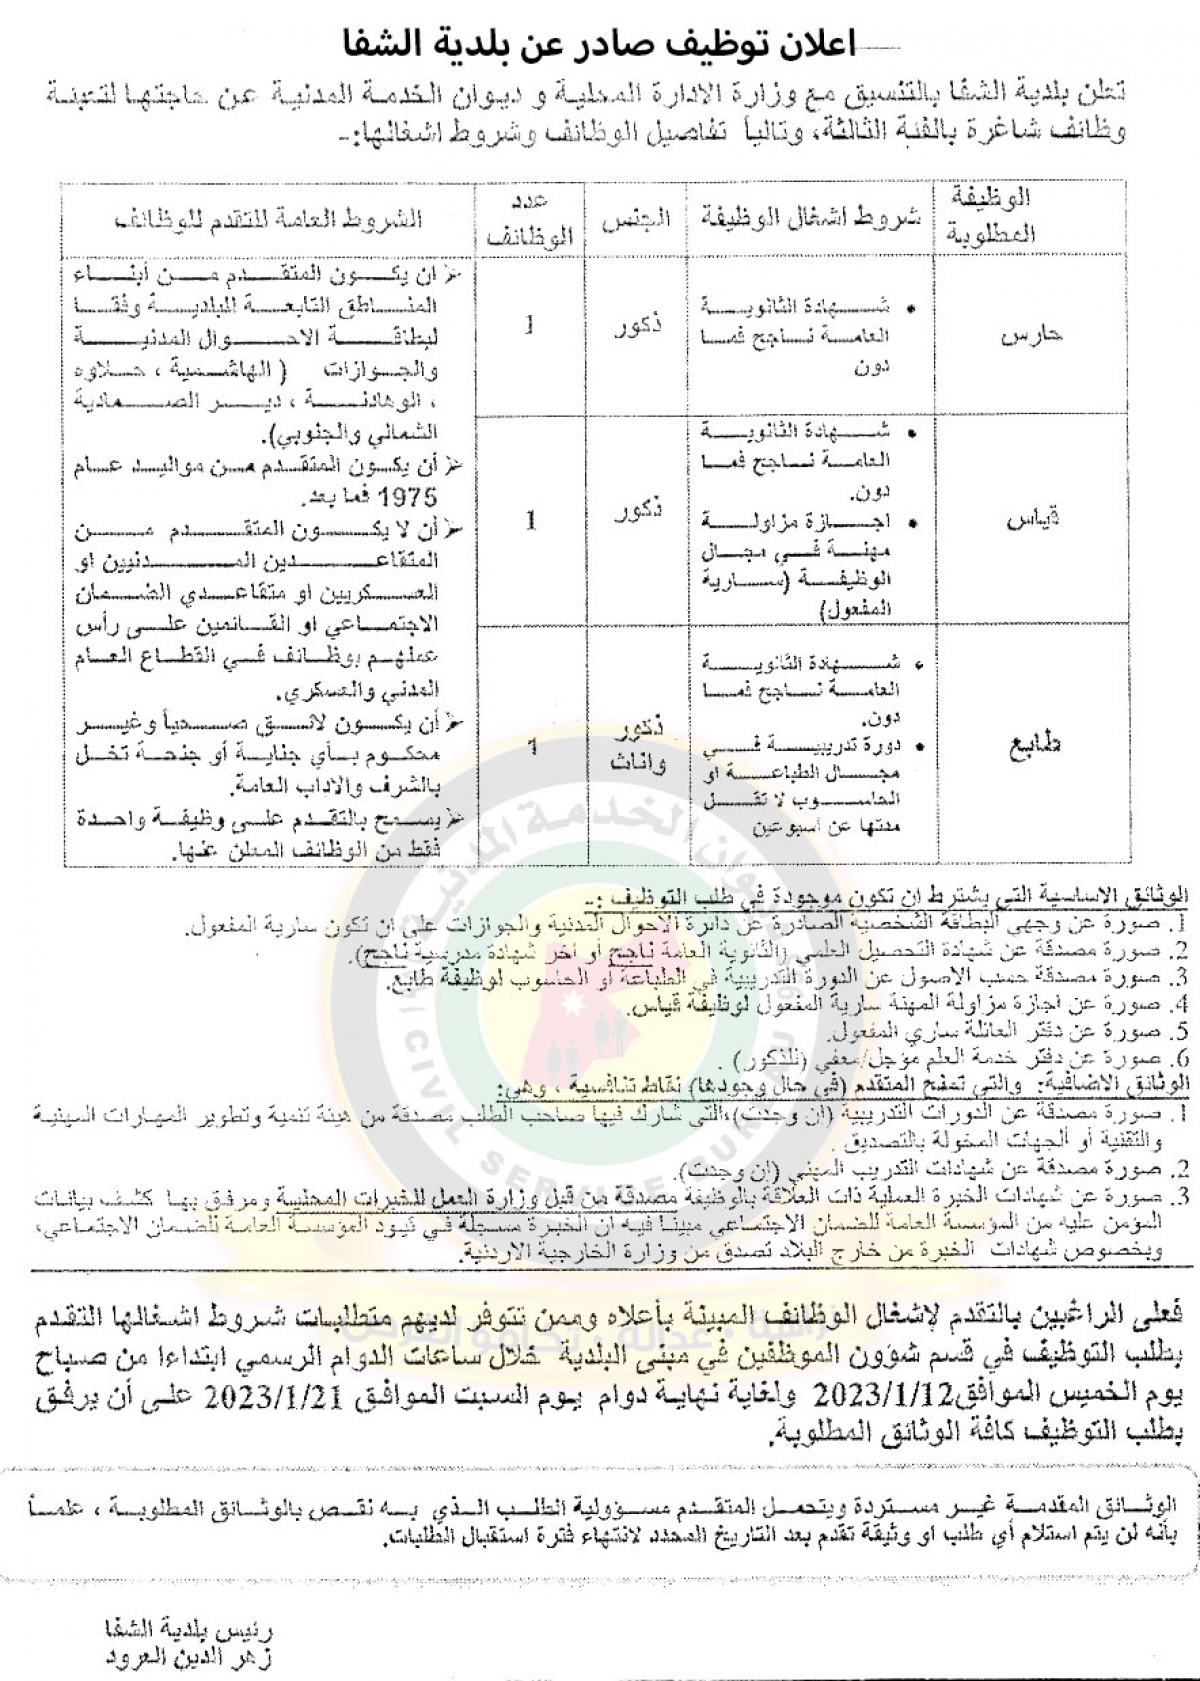 اعلان وظائف شاغرة بالفئة الثالثة صادر عن بلدية عين الشفا